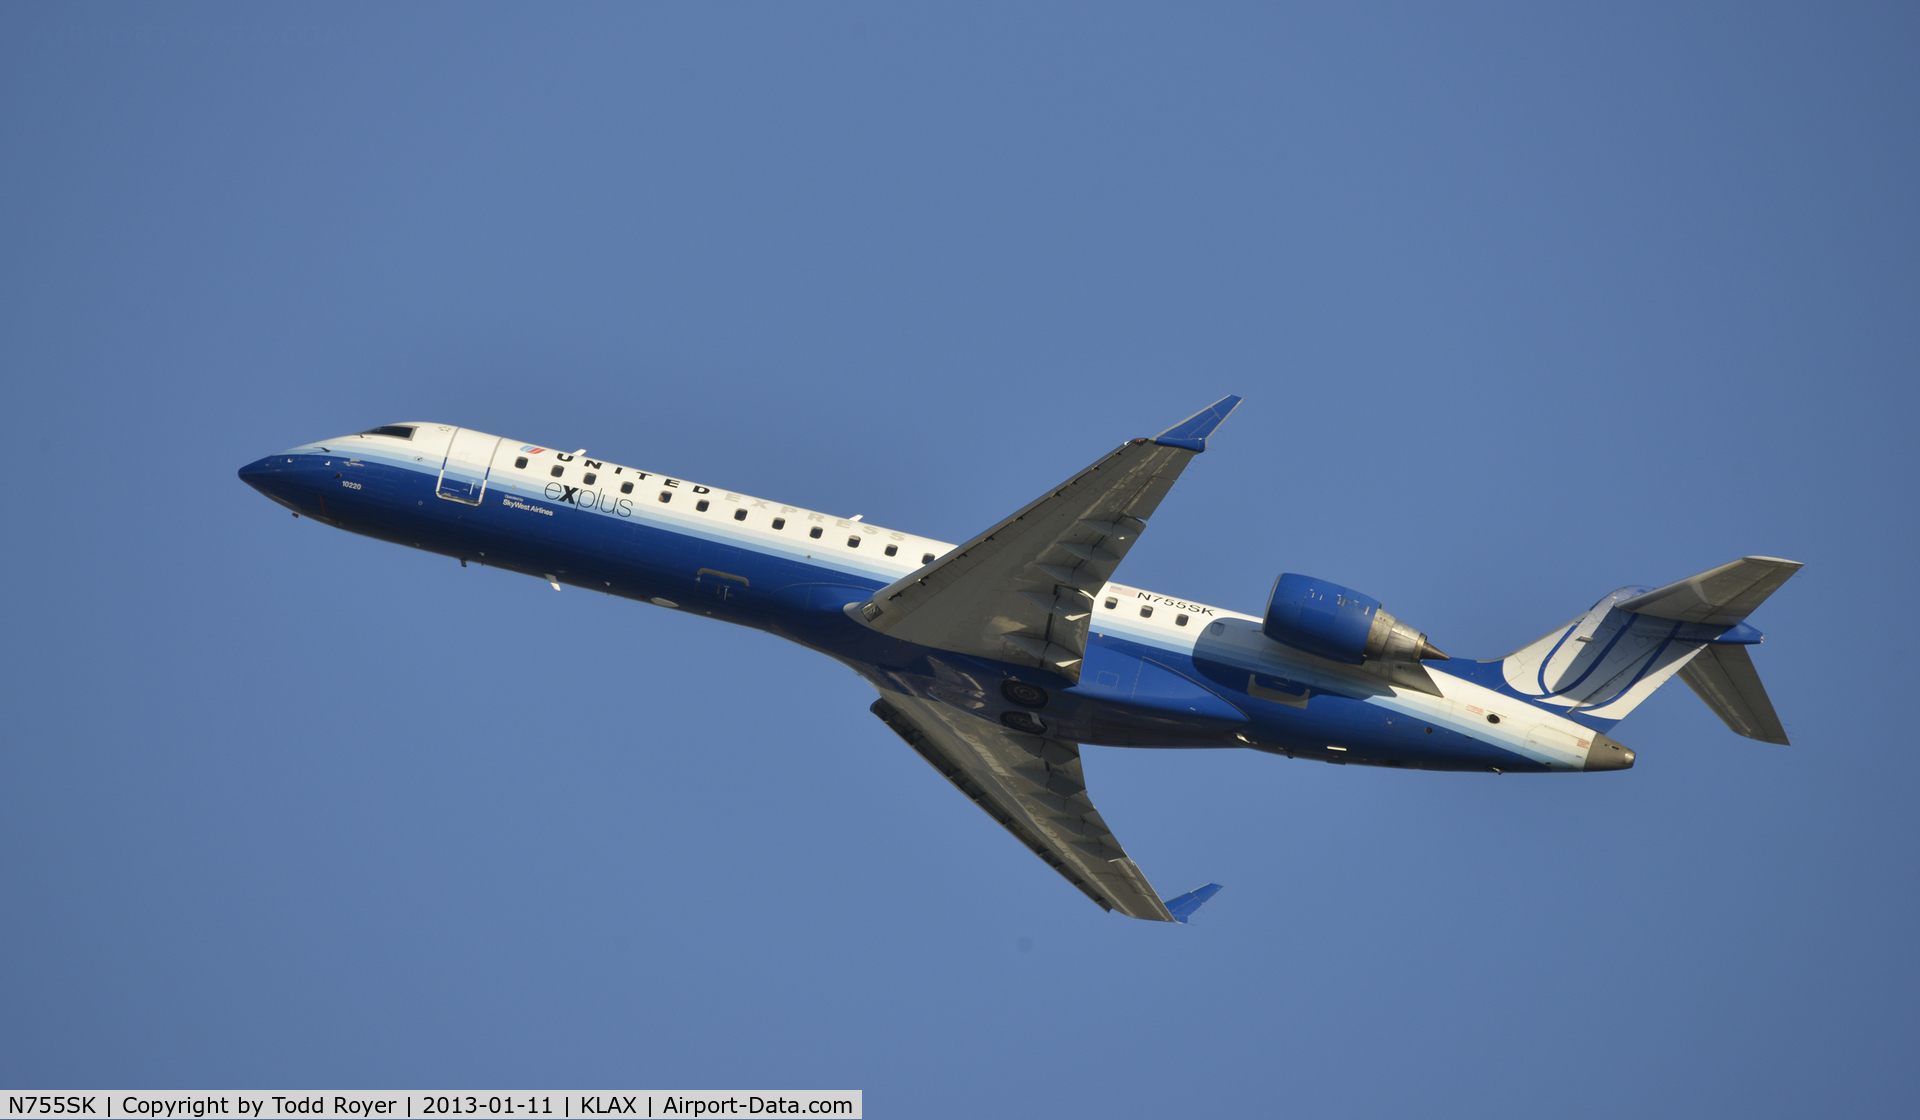 N755SK, 2005 Bombardier CRJ-700 (CL-600-2C10) Regional Jet C/N 10220, Departing LAX